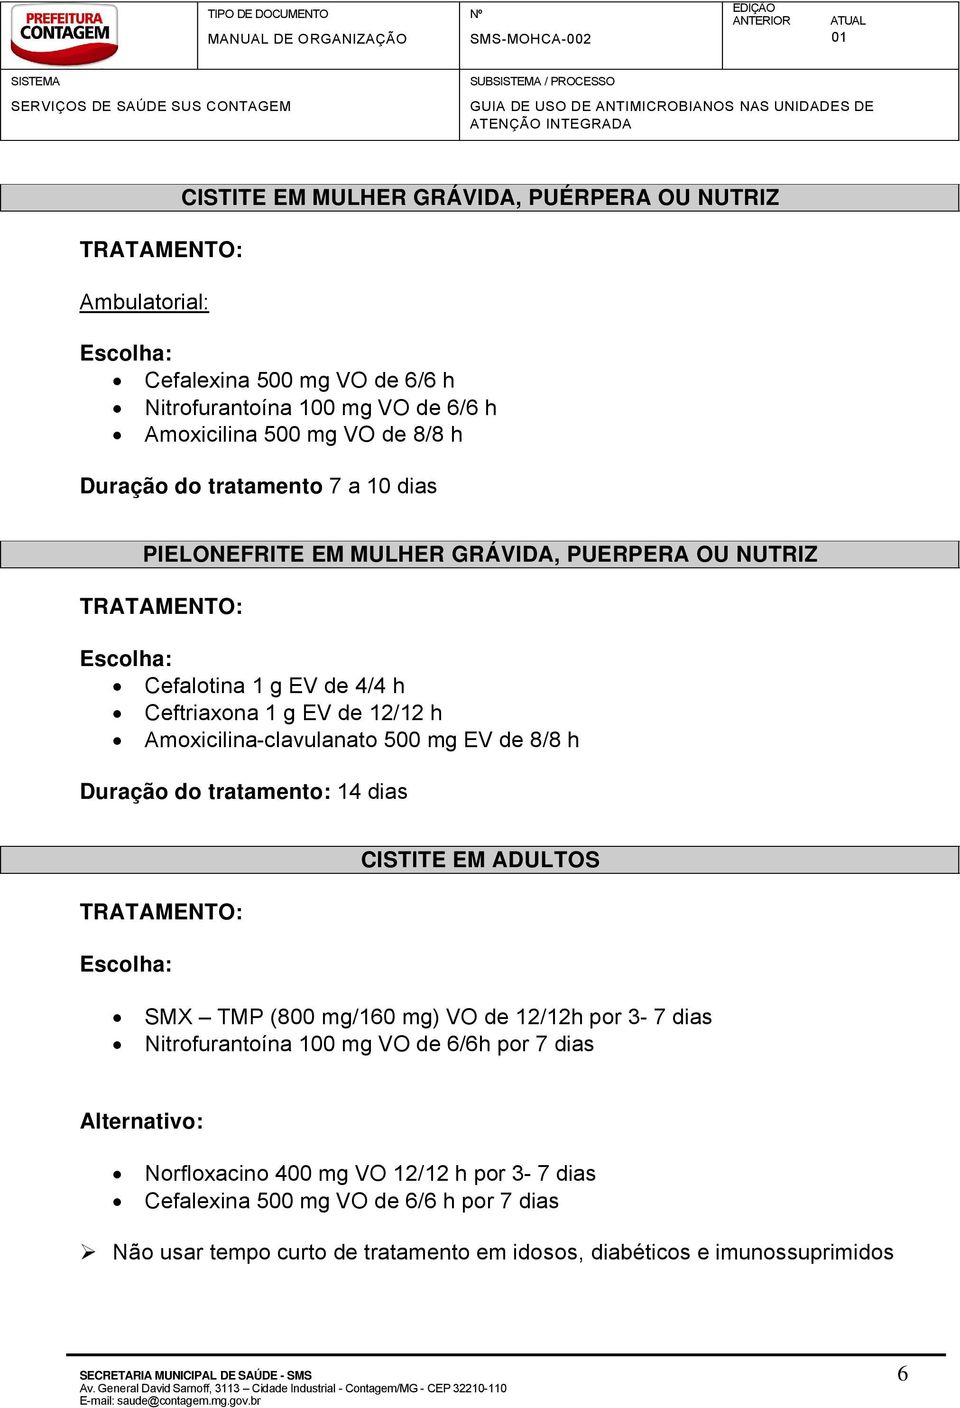 Amoxicilina-clavulanato 500 mg EV de 8/8 h Duração do tratamento: 14 dias CISTITE EM ADULTOS SMX TMP (800 mg/160 mg) VO de 12/12h por 3-7 dias Nitrofurantoãna